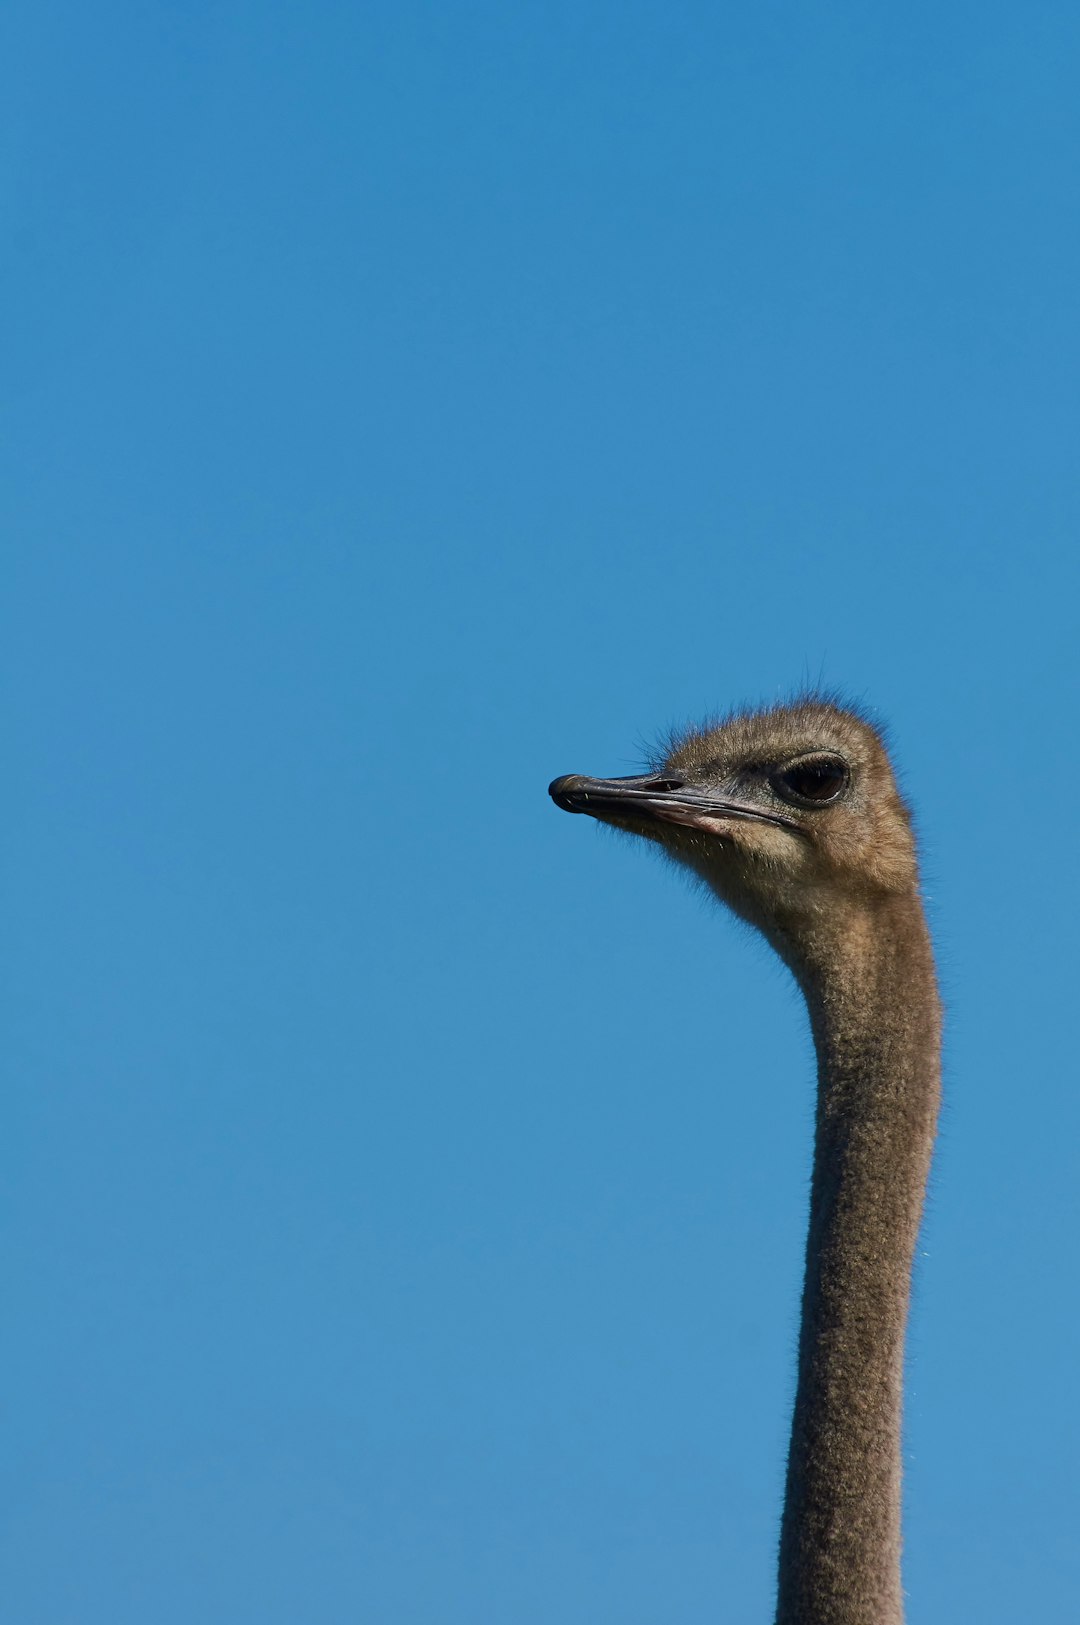 ostrich head under blue sky during daytime